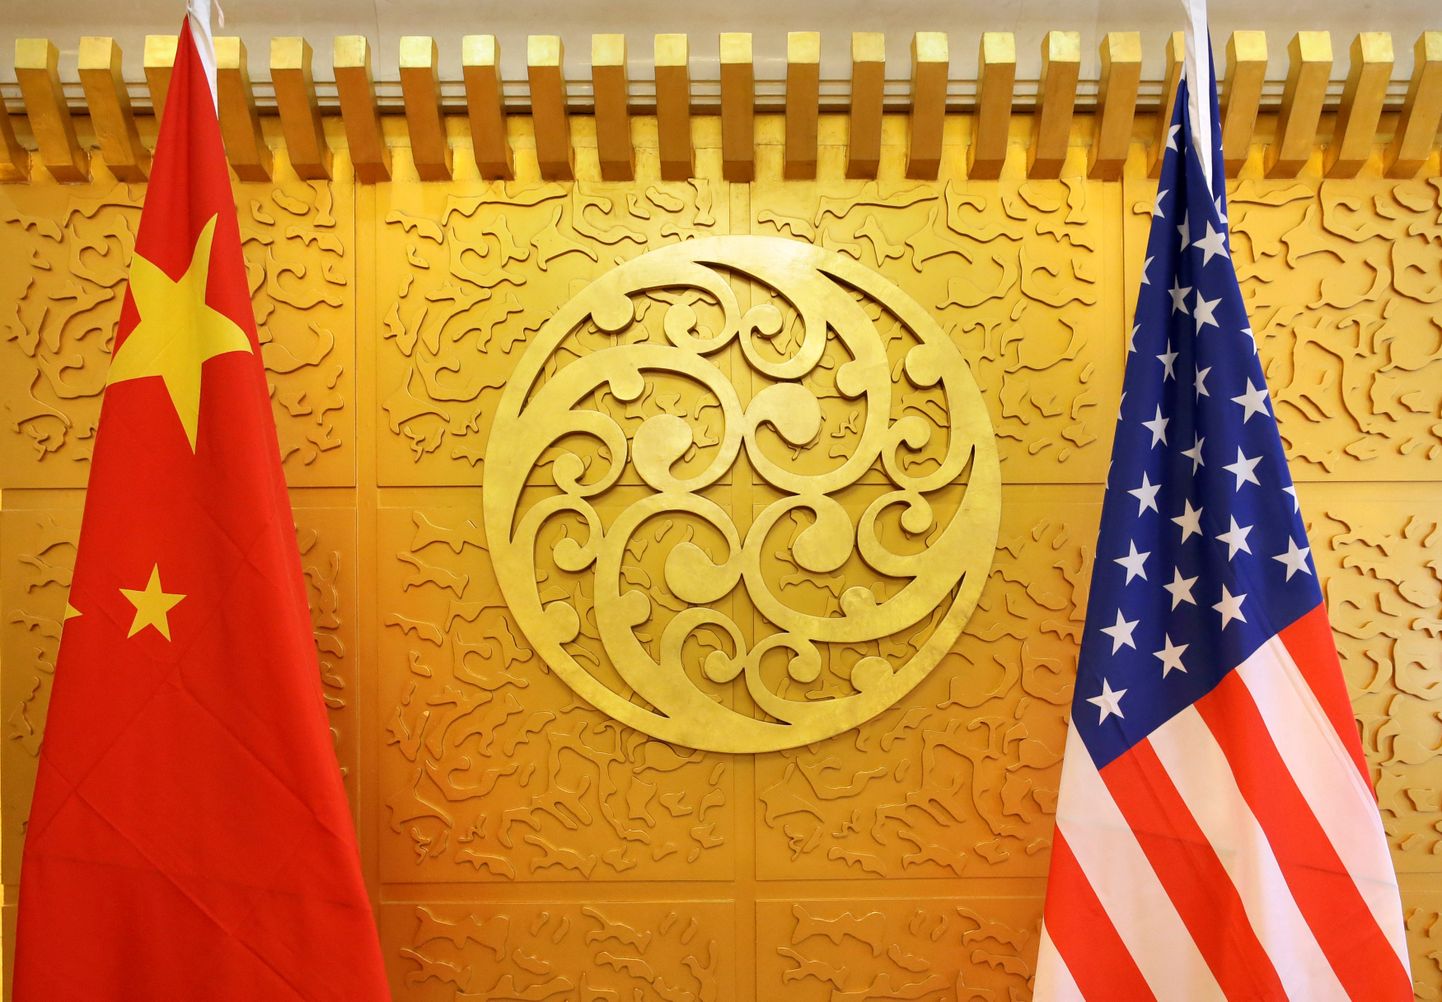 Hiina ja USA riigilipud.